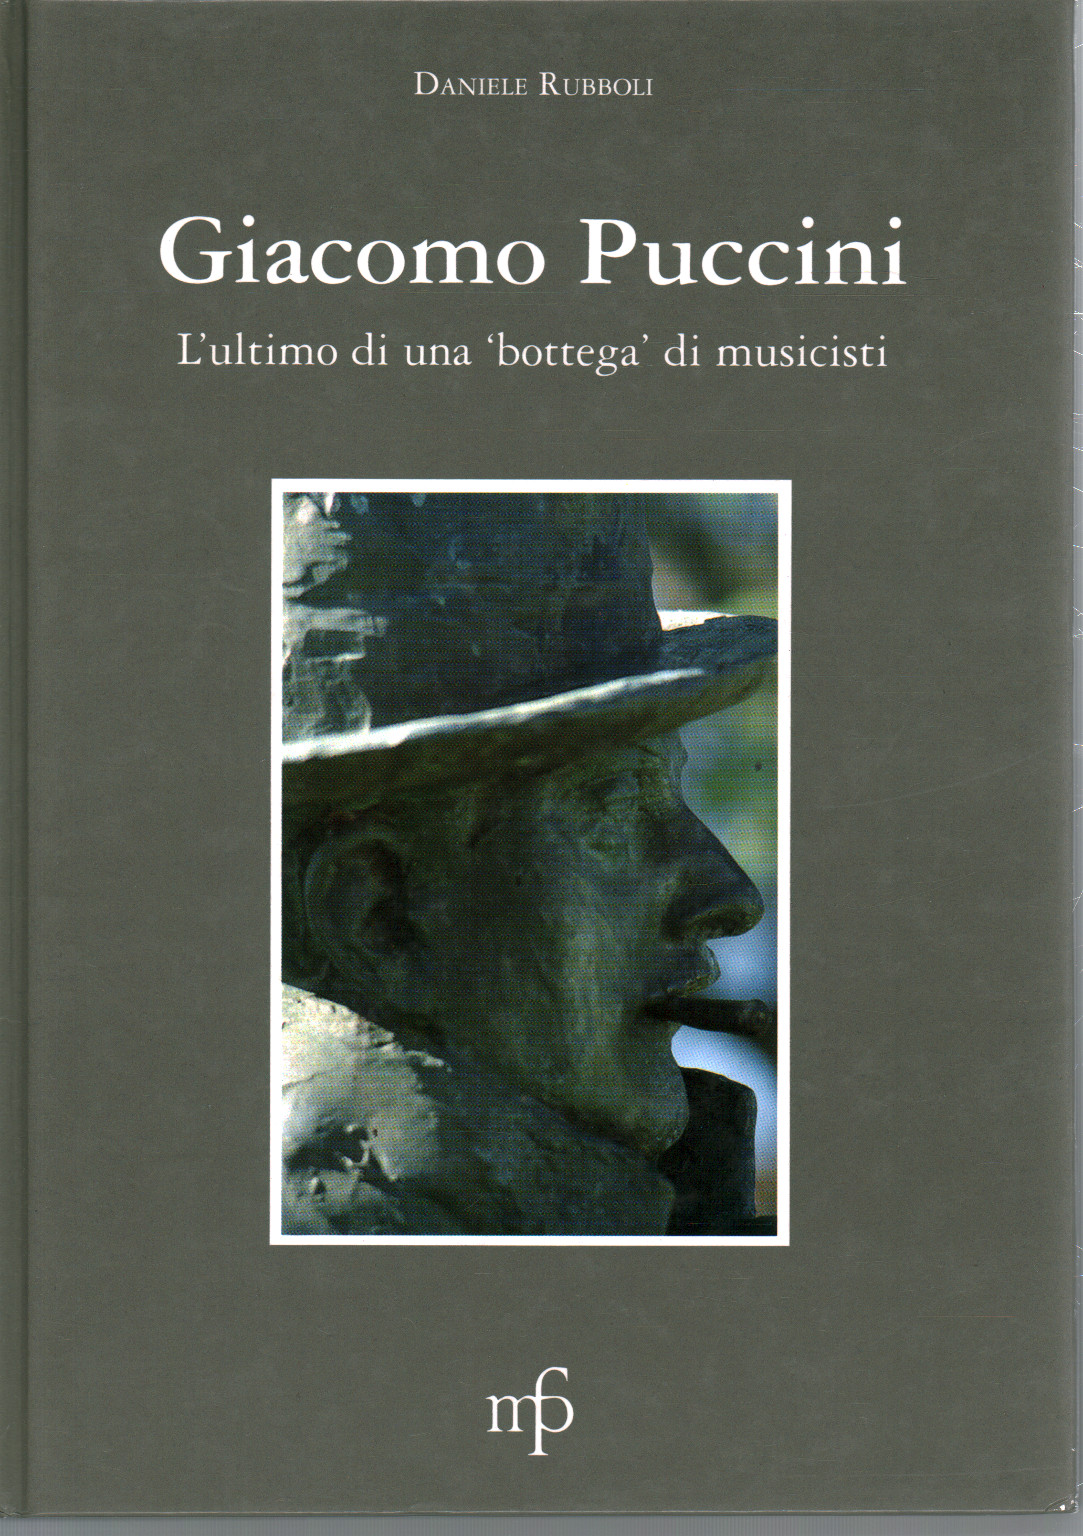 Giacomo Puccini's.a.